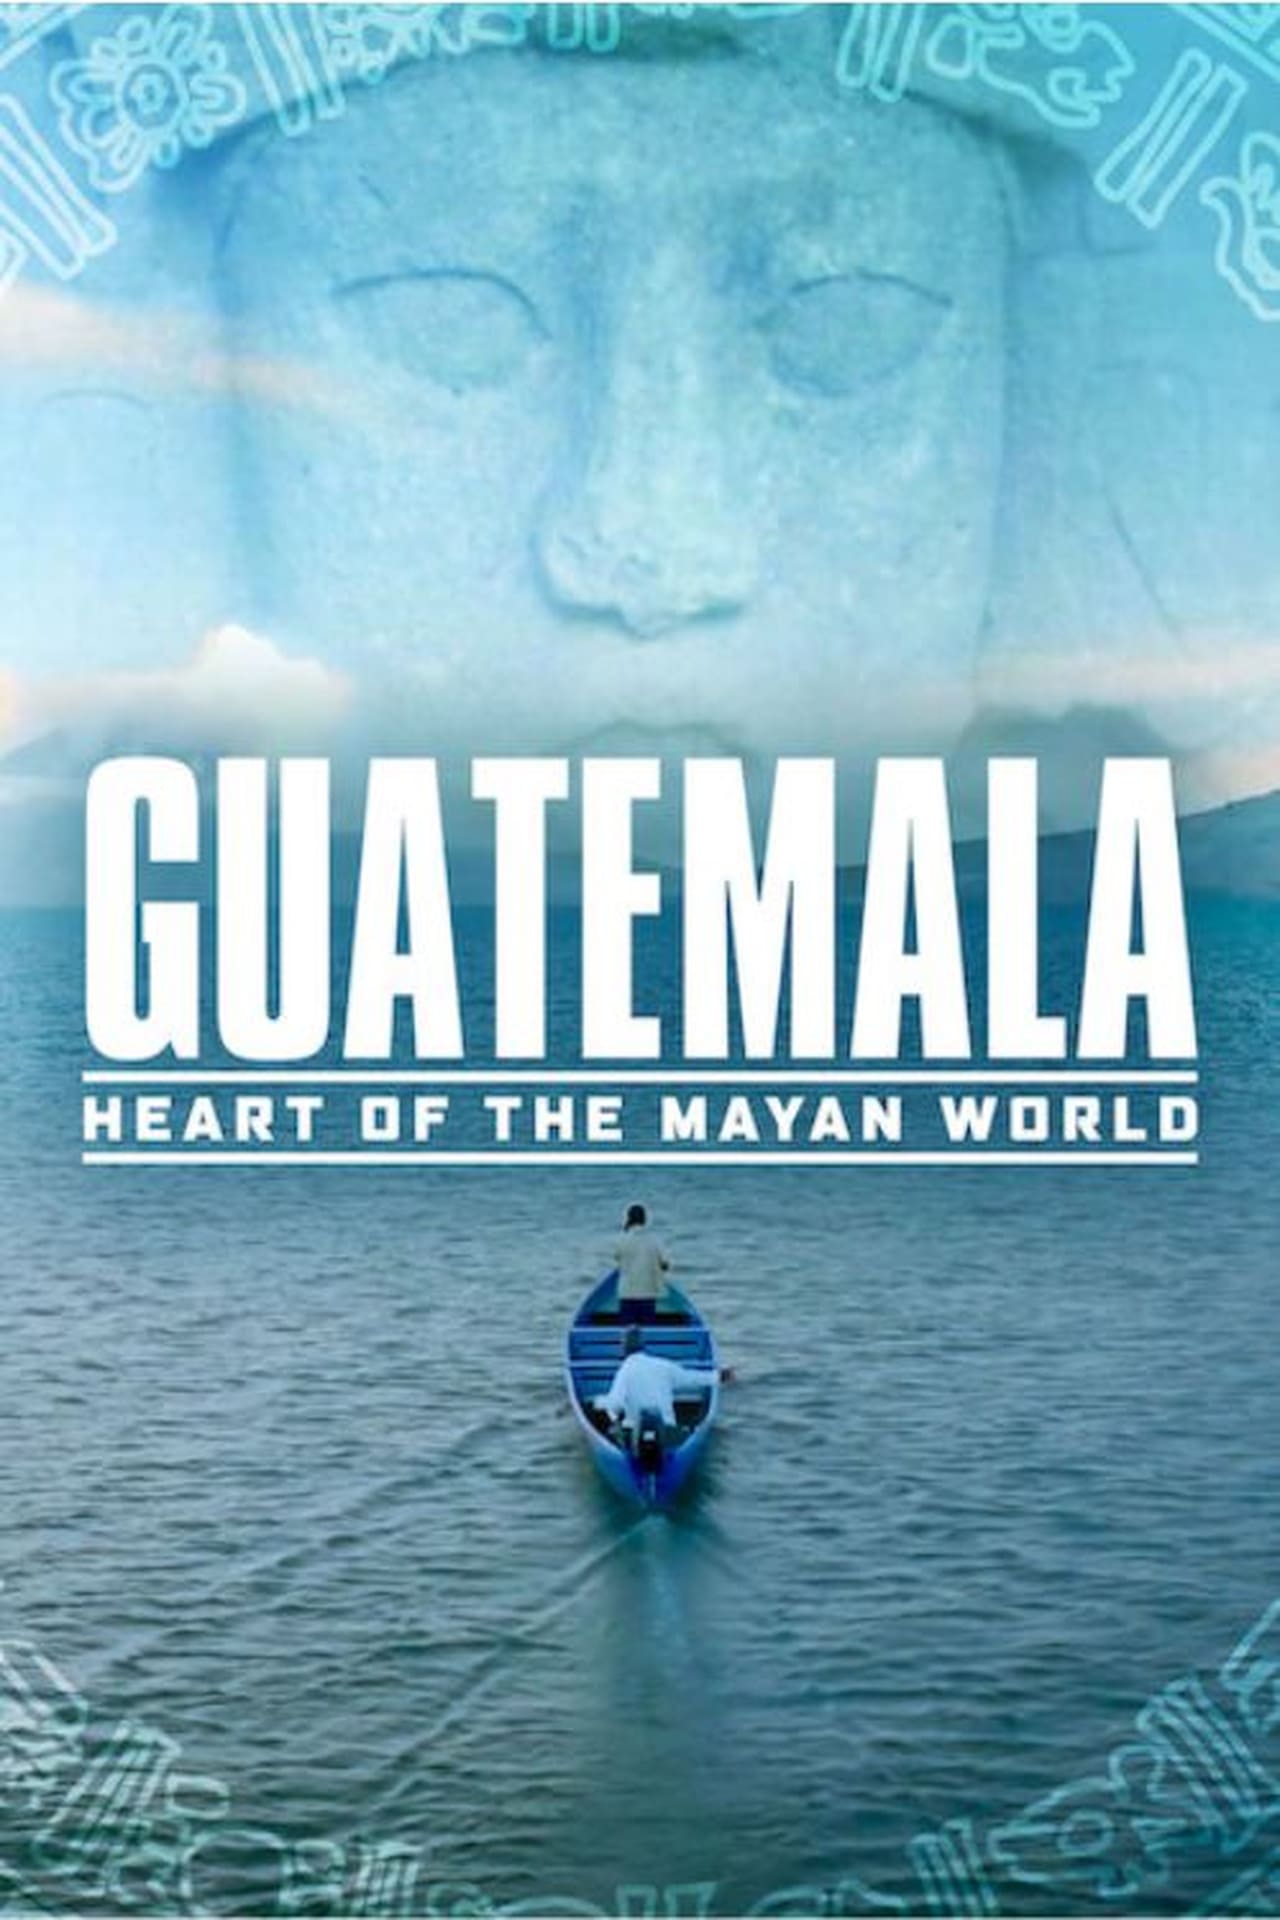 Guatemala: Coração do Mundo Maia